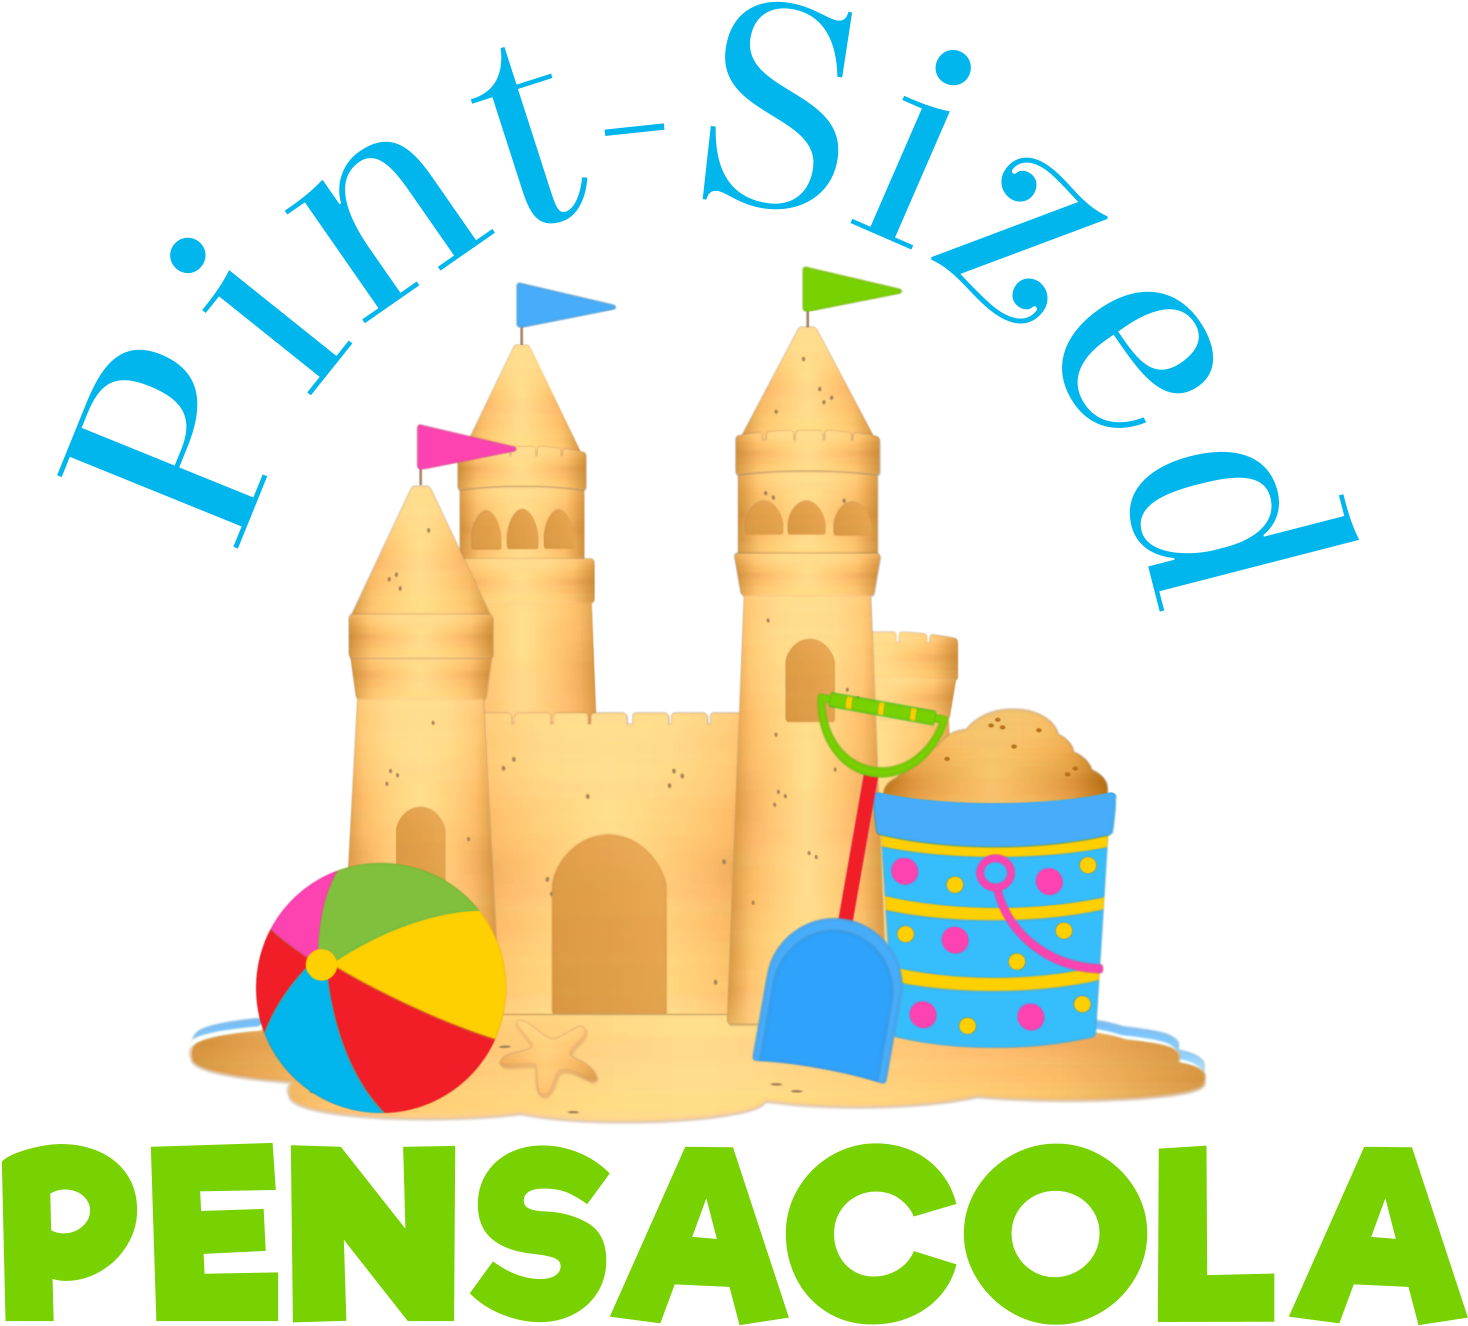 Pint-sized Pensacola - Pint (1697x1697)